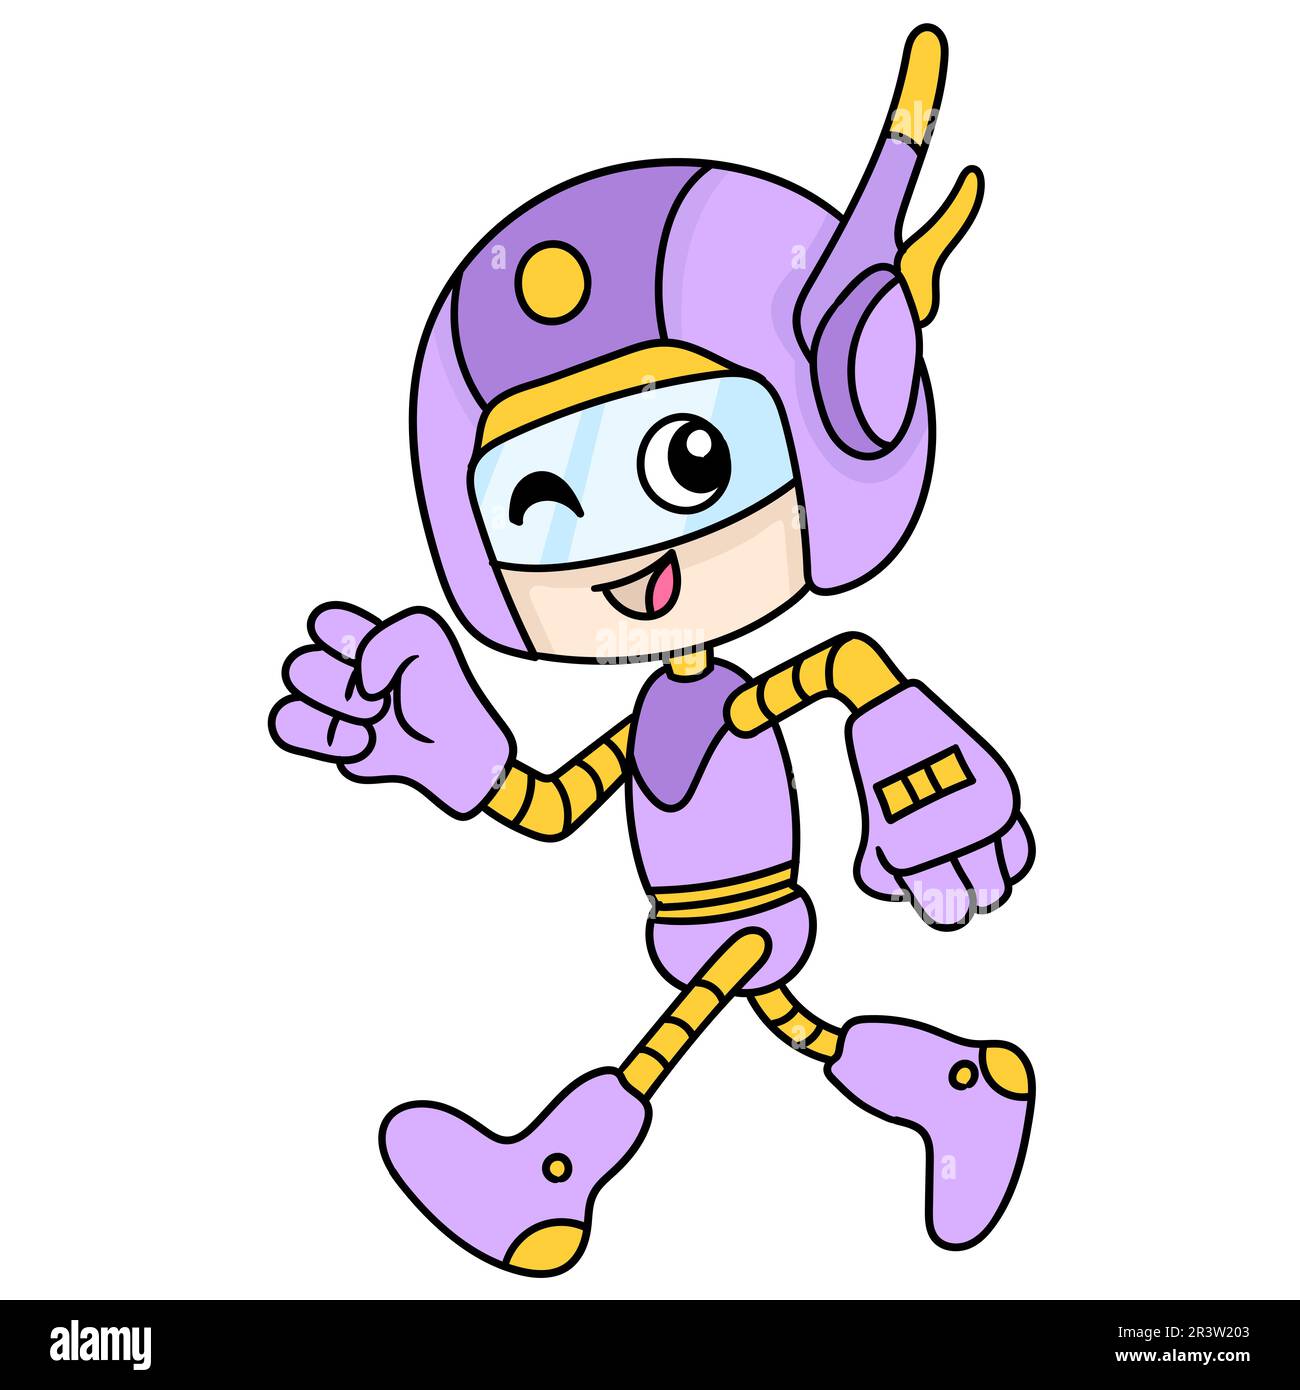 Roboter-Superheld in High-Tech-Outfit, der mit einem fröhlichen Lächeln und einem koodle-Ikone-Bild Kawaii läuft Stockfoto